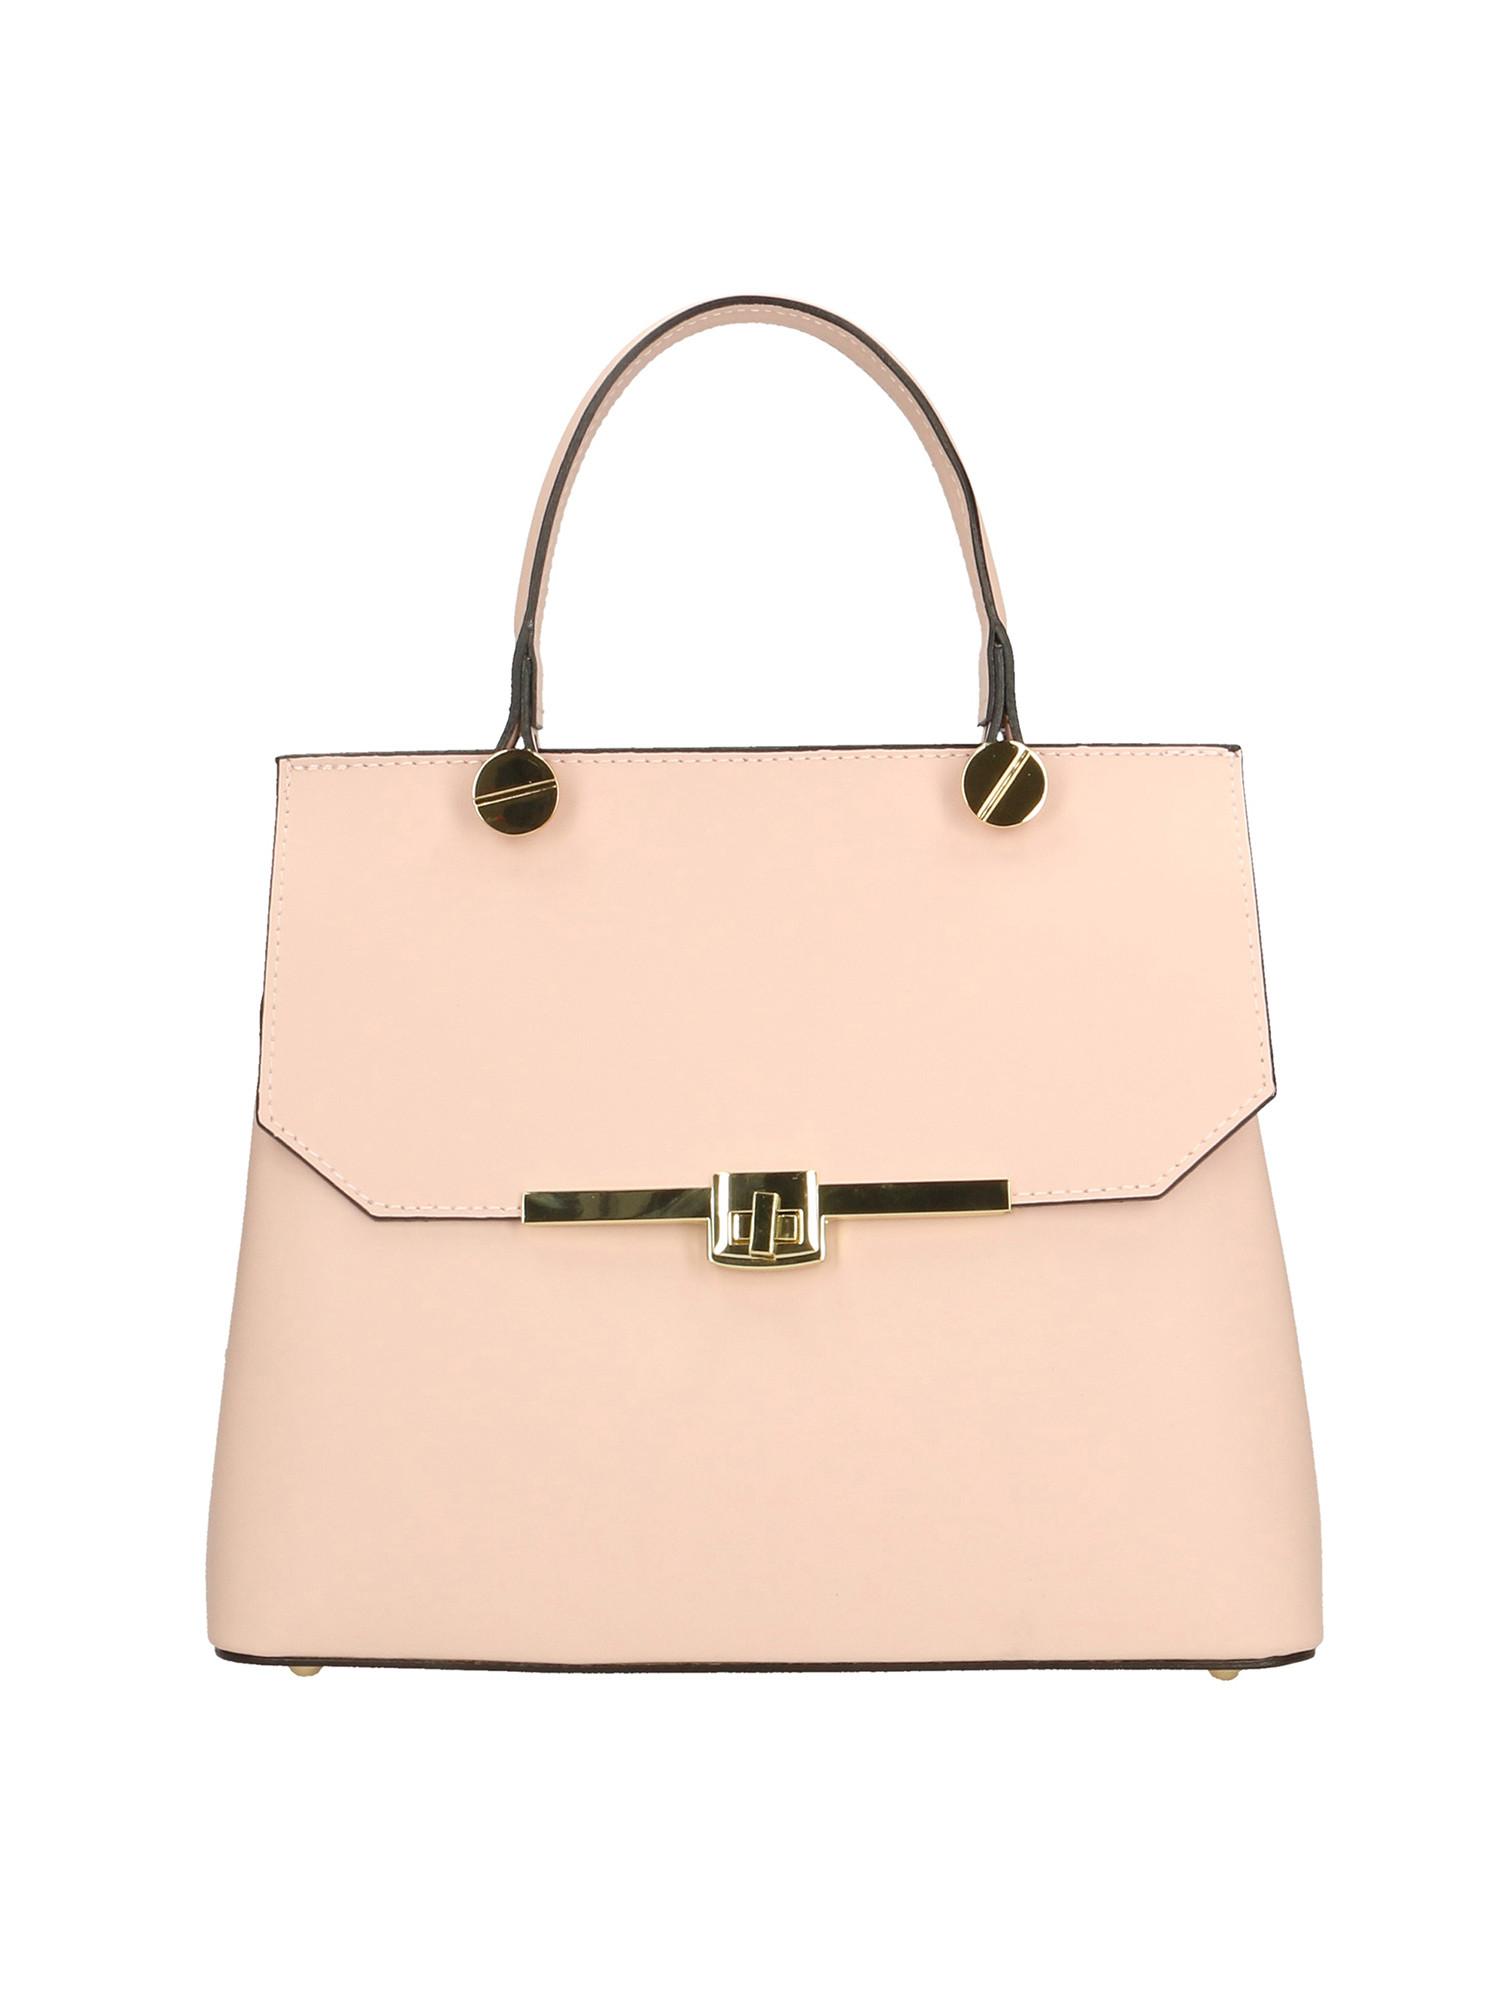 Handtasche Damen Pink ONE SIZE von Gave Lux